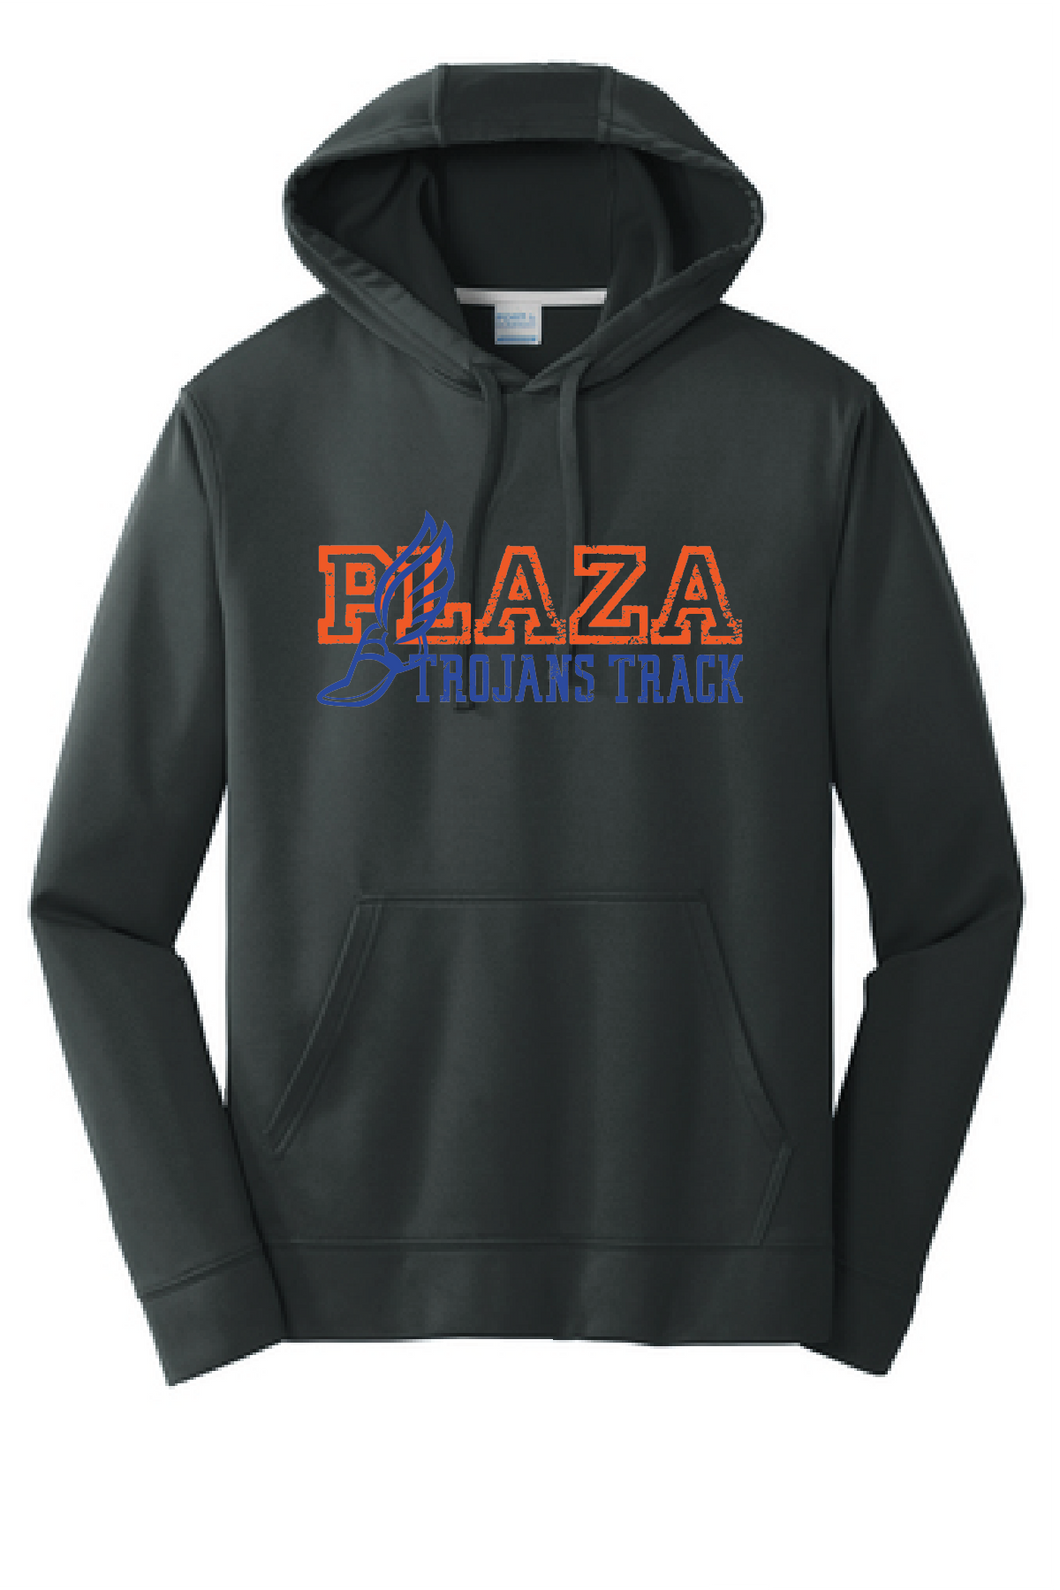 Performance Fleece Hooded Sweatshirt / Black / Plaza Middle School Track